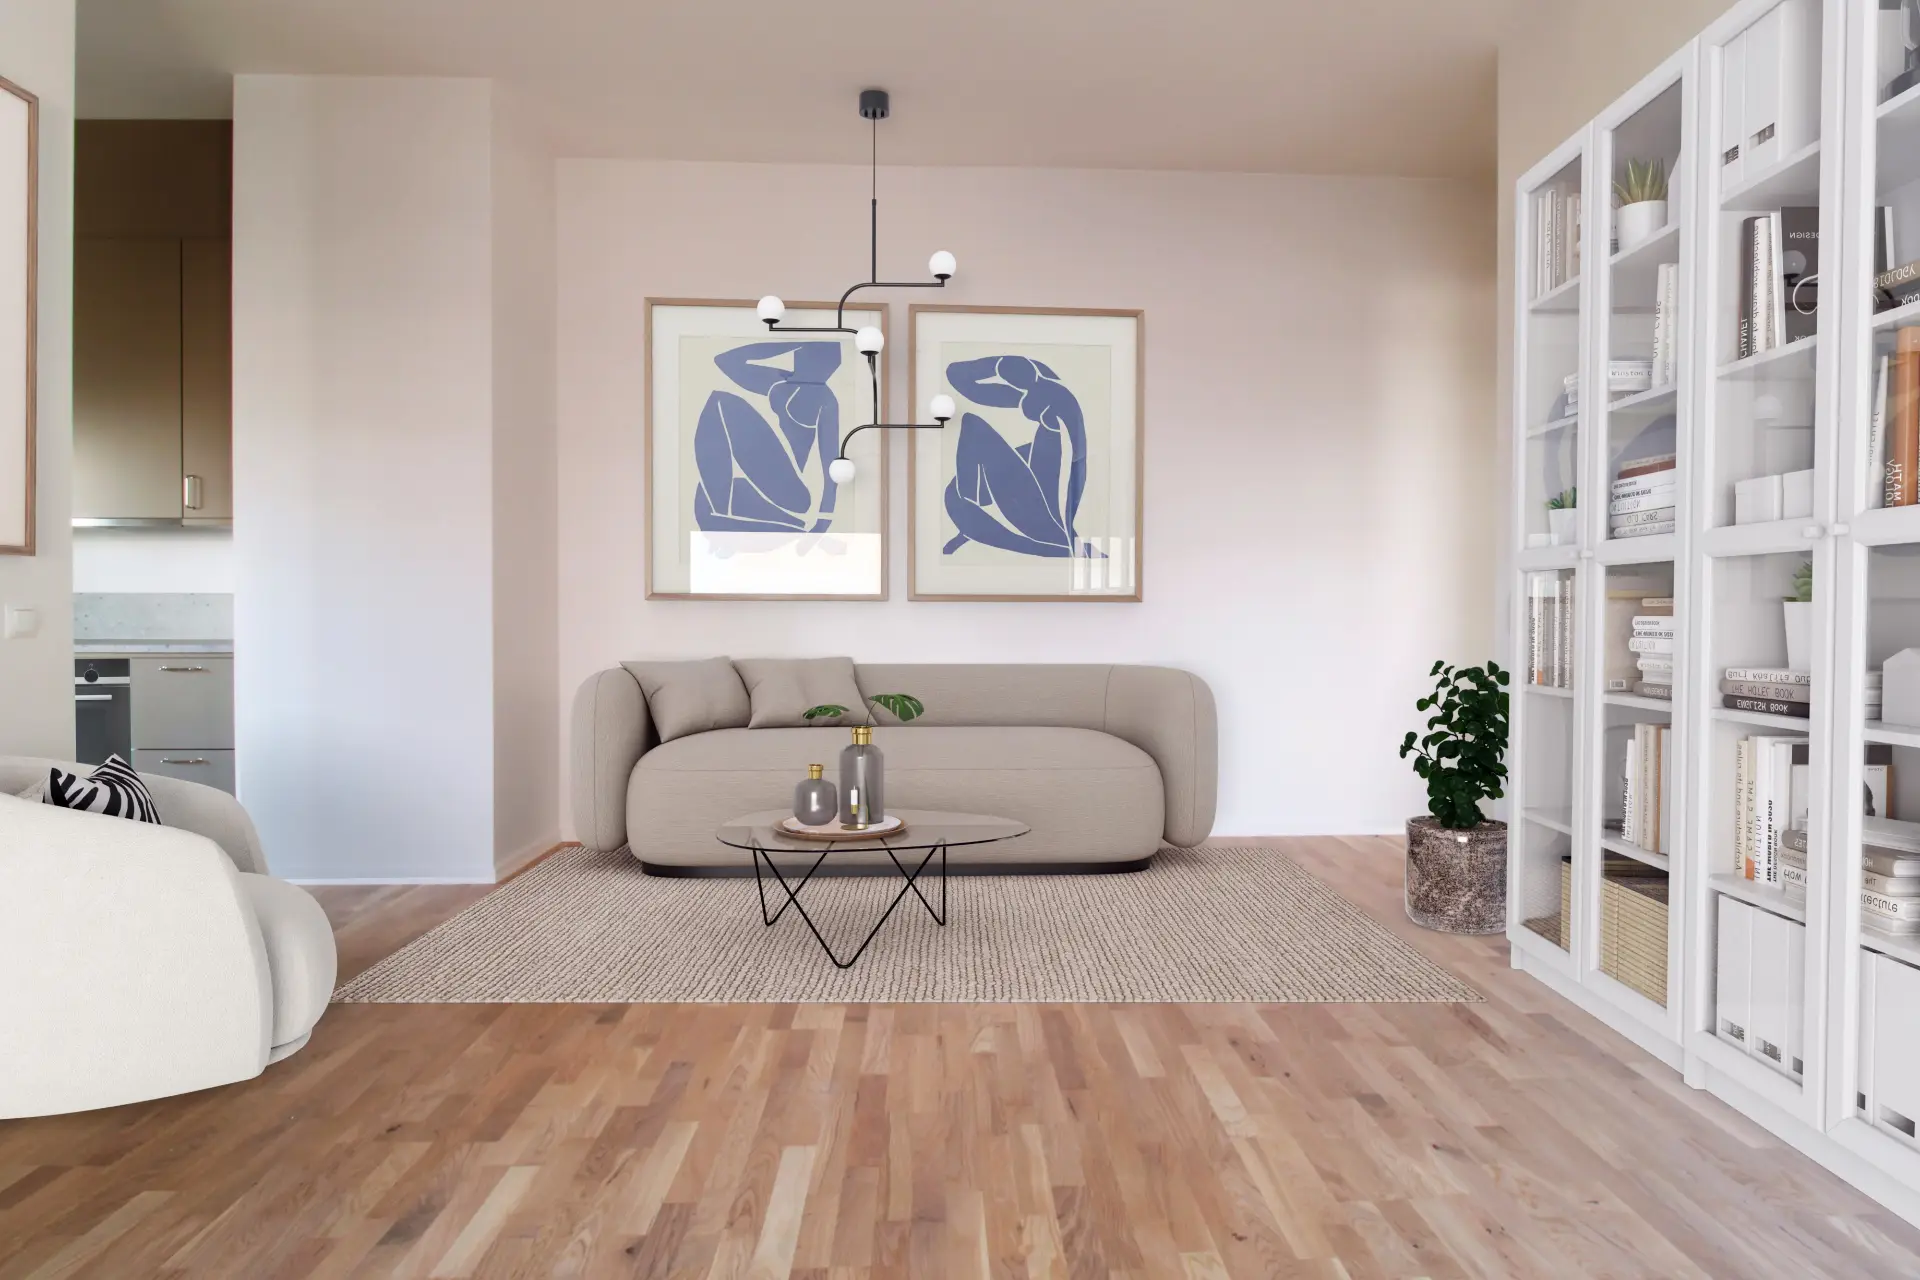 Ett vardagsrum med en beige soffa, ett soffbord med glasskiva, två abstrakta blå konstverk på väggen, en stor vit bokhylla och trägolv. ljuset filtreras in från sidan, vilket ger utrymmet en varm och välkomnande känsla.